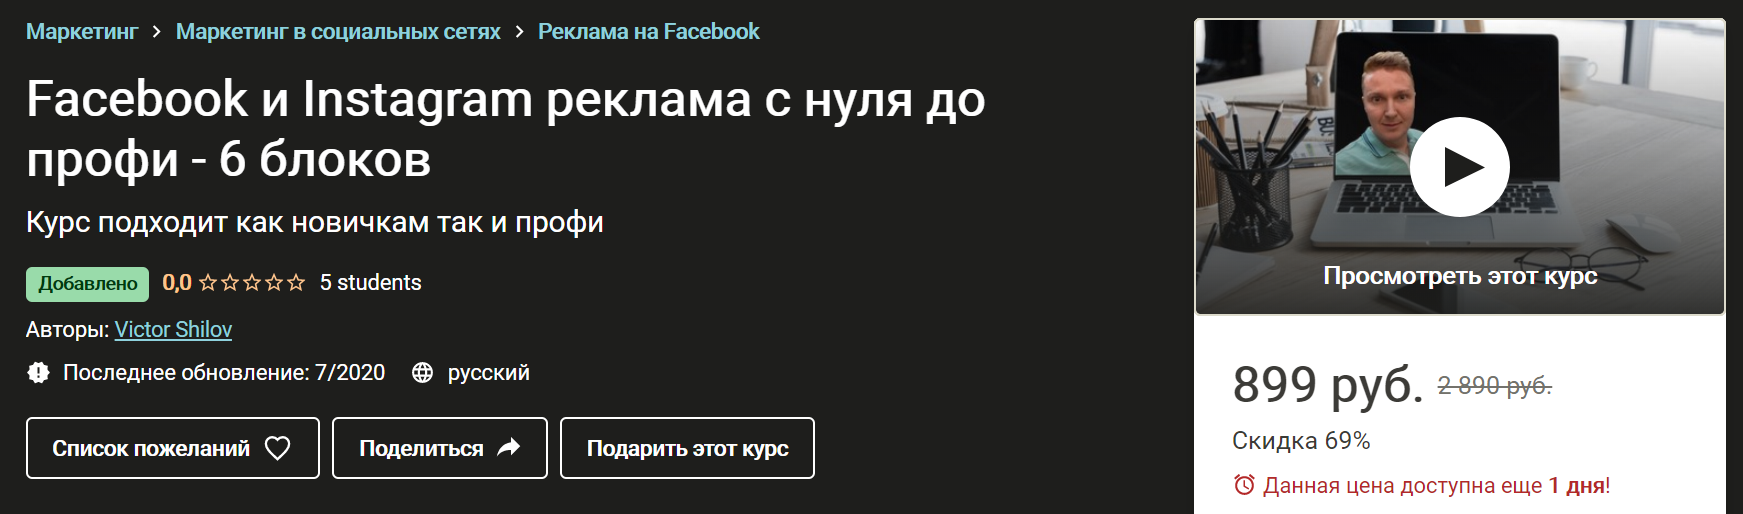 udemy-facebook-i-instagram-reklama-s-nulja-do-profi-6-blokov-2020-png.1468